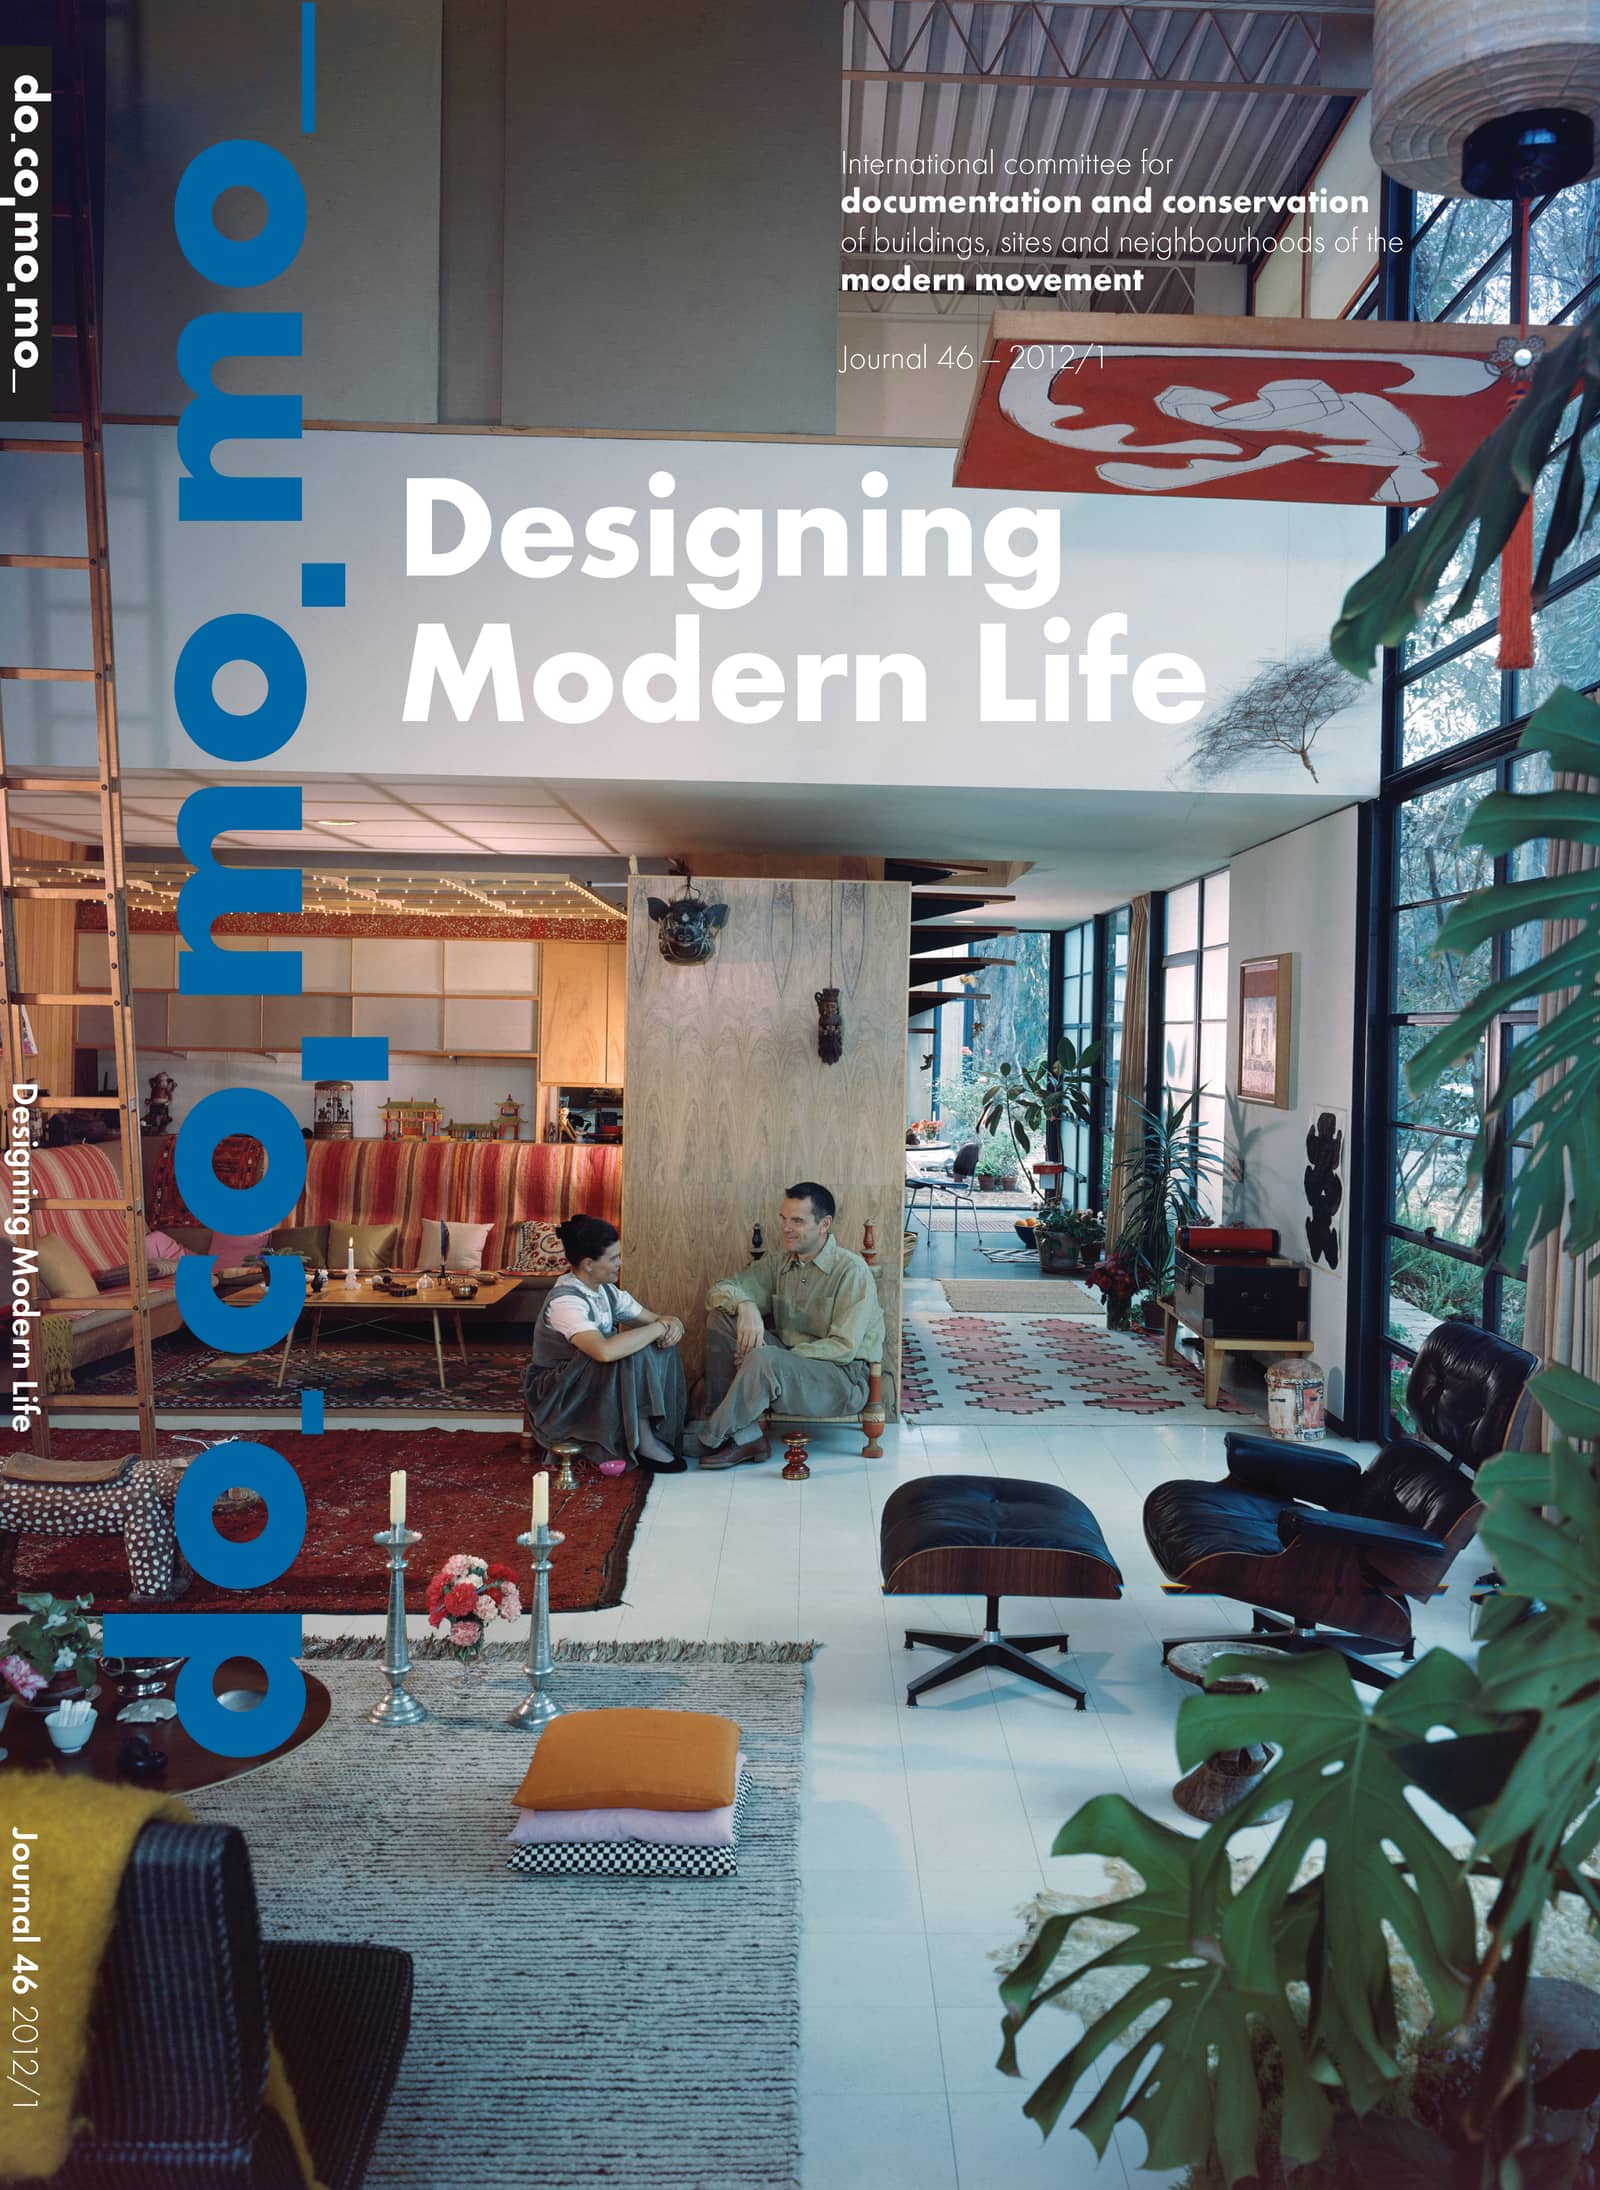 						View No. 46 (2012): Designing Modern Life
					